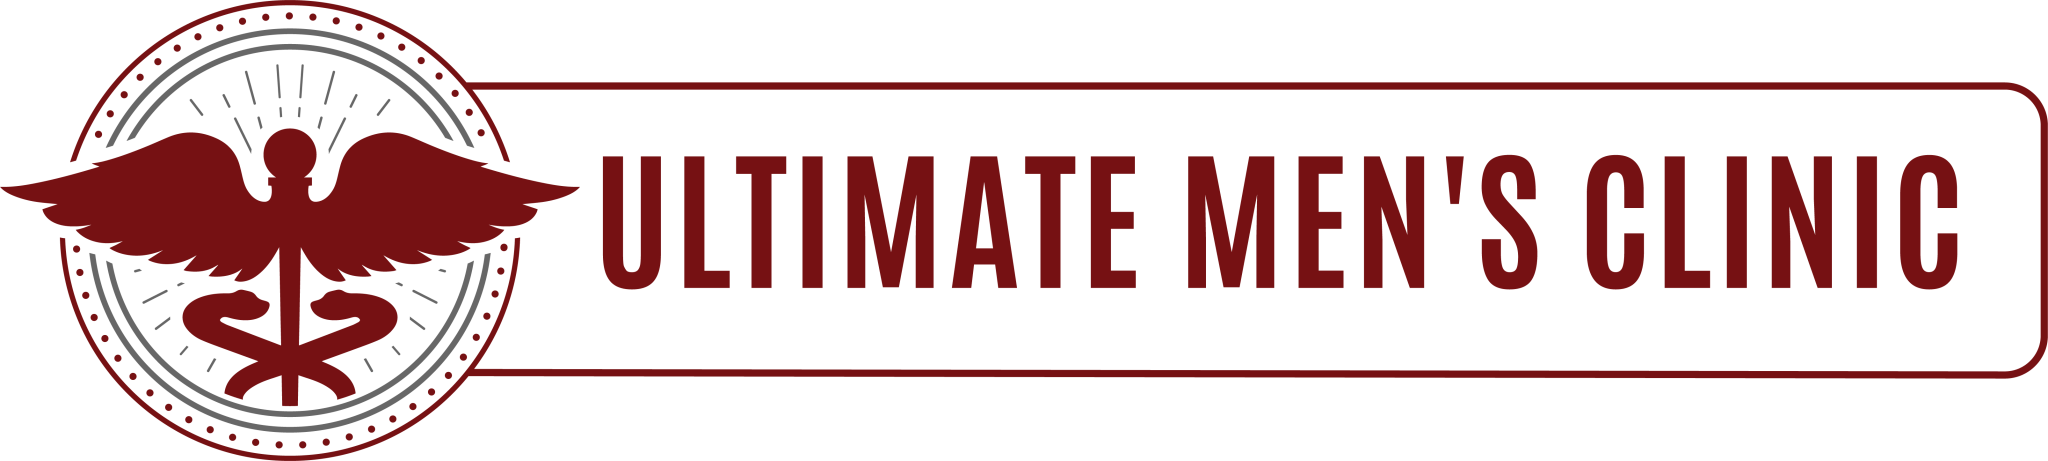 Ultimate Men's Clinic in Tulsa Oklahoma logo